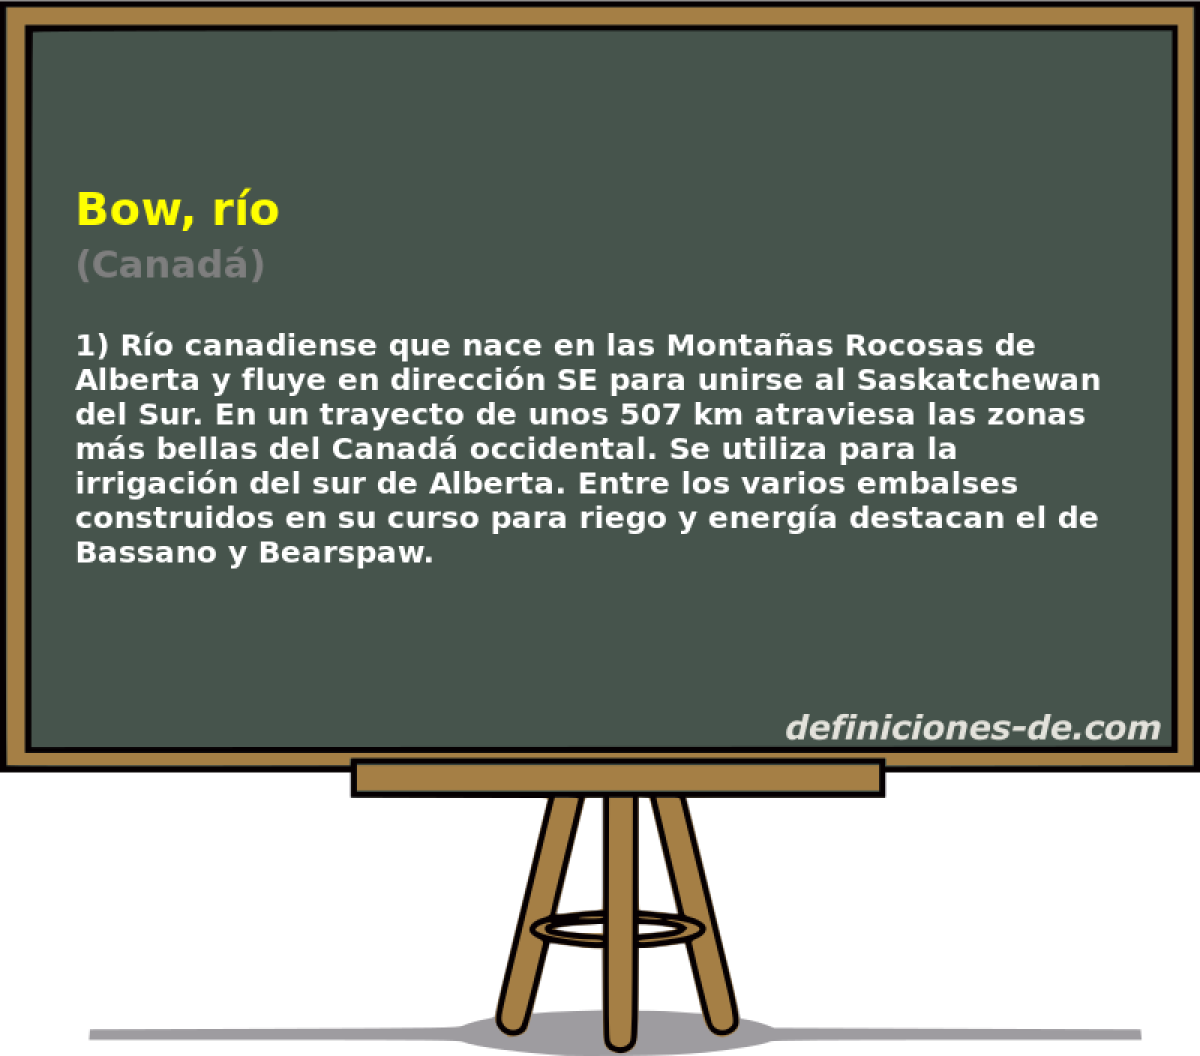 Bow, ro (Canad)